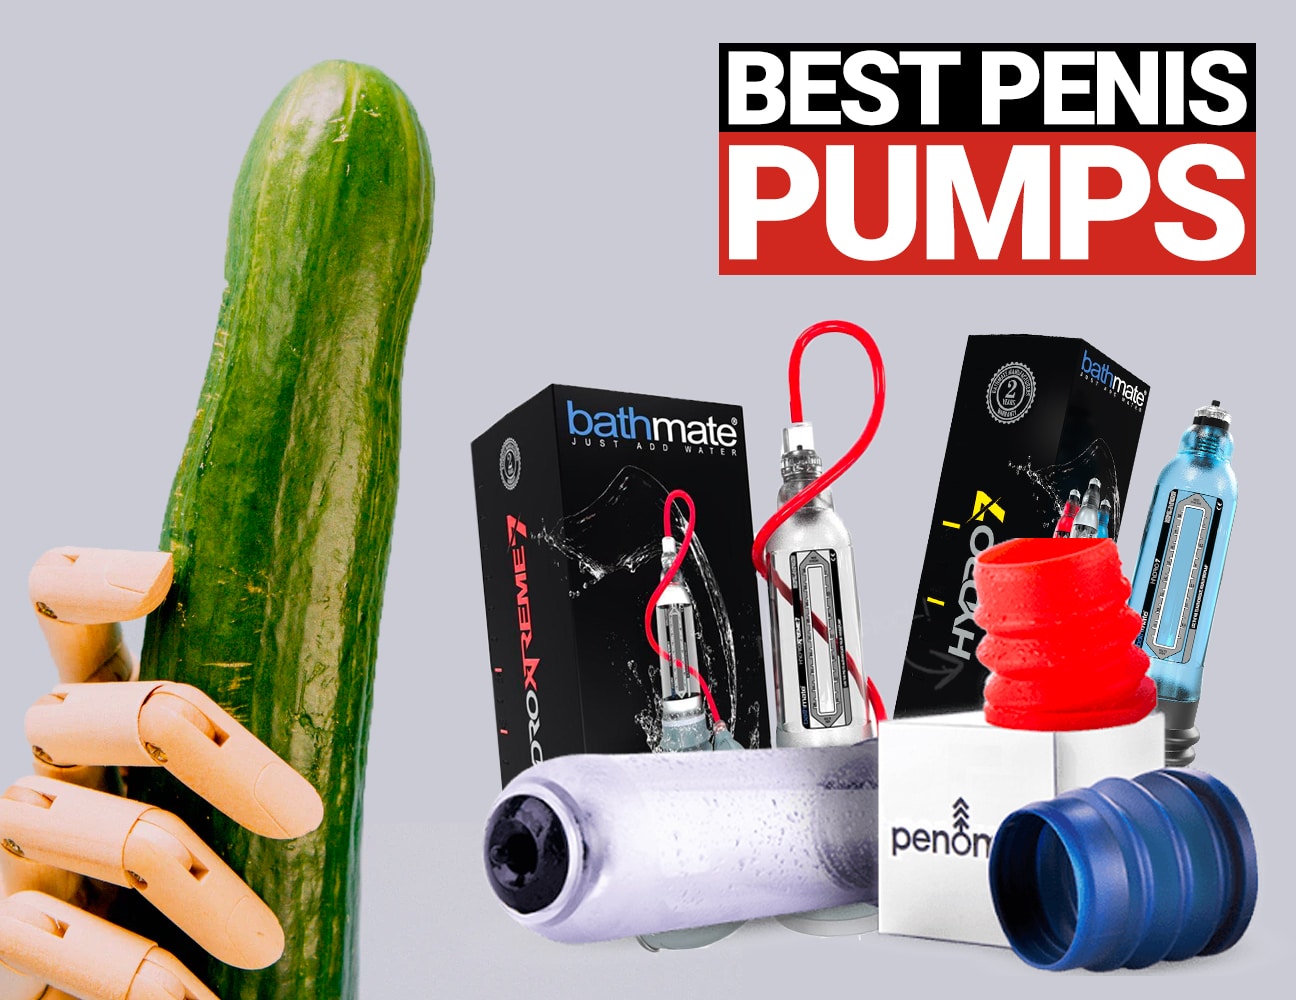 Best penis pumps